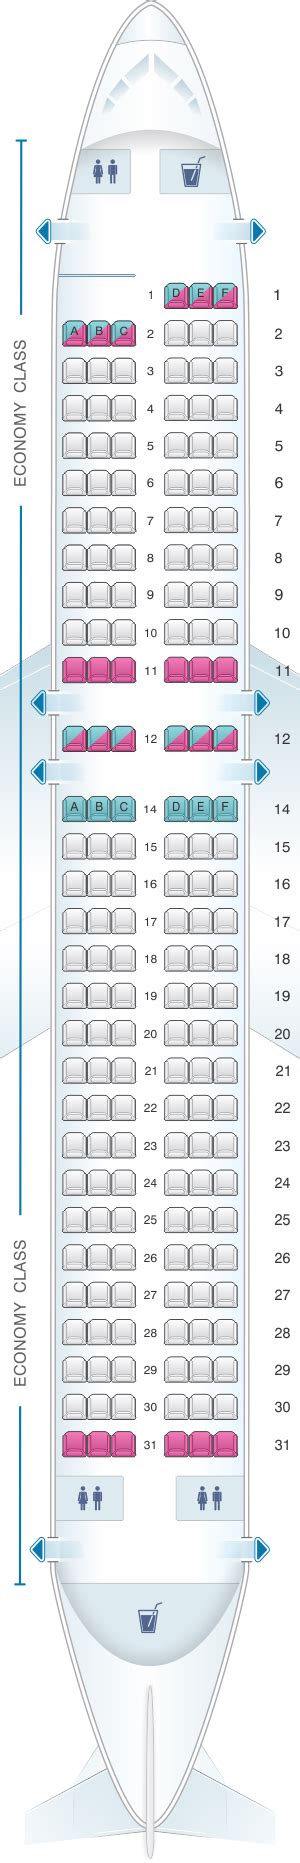 Airbus A320. Seats: 177/186. Seat Width (min-max): 16